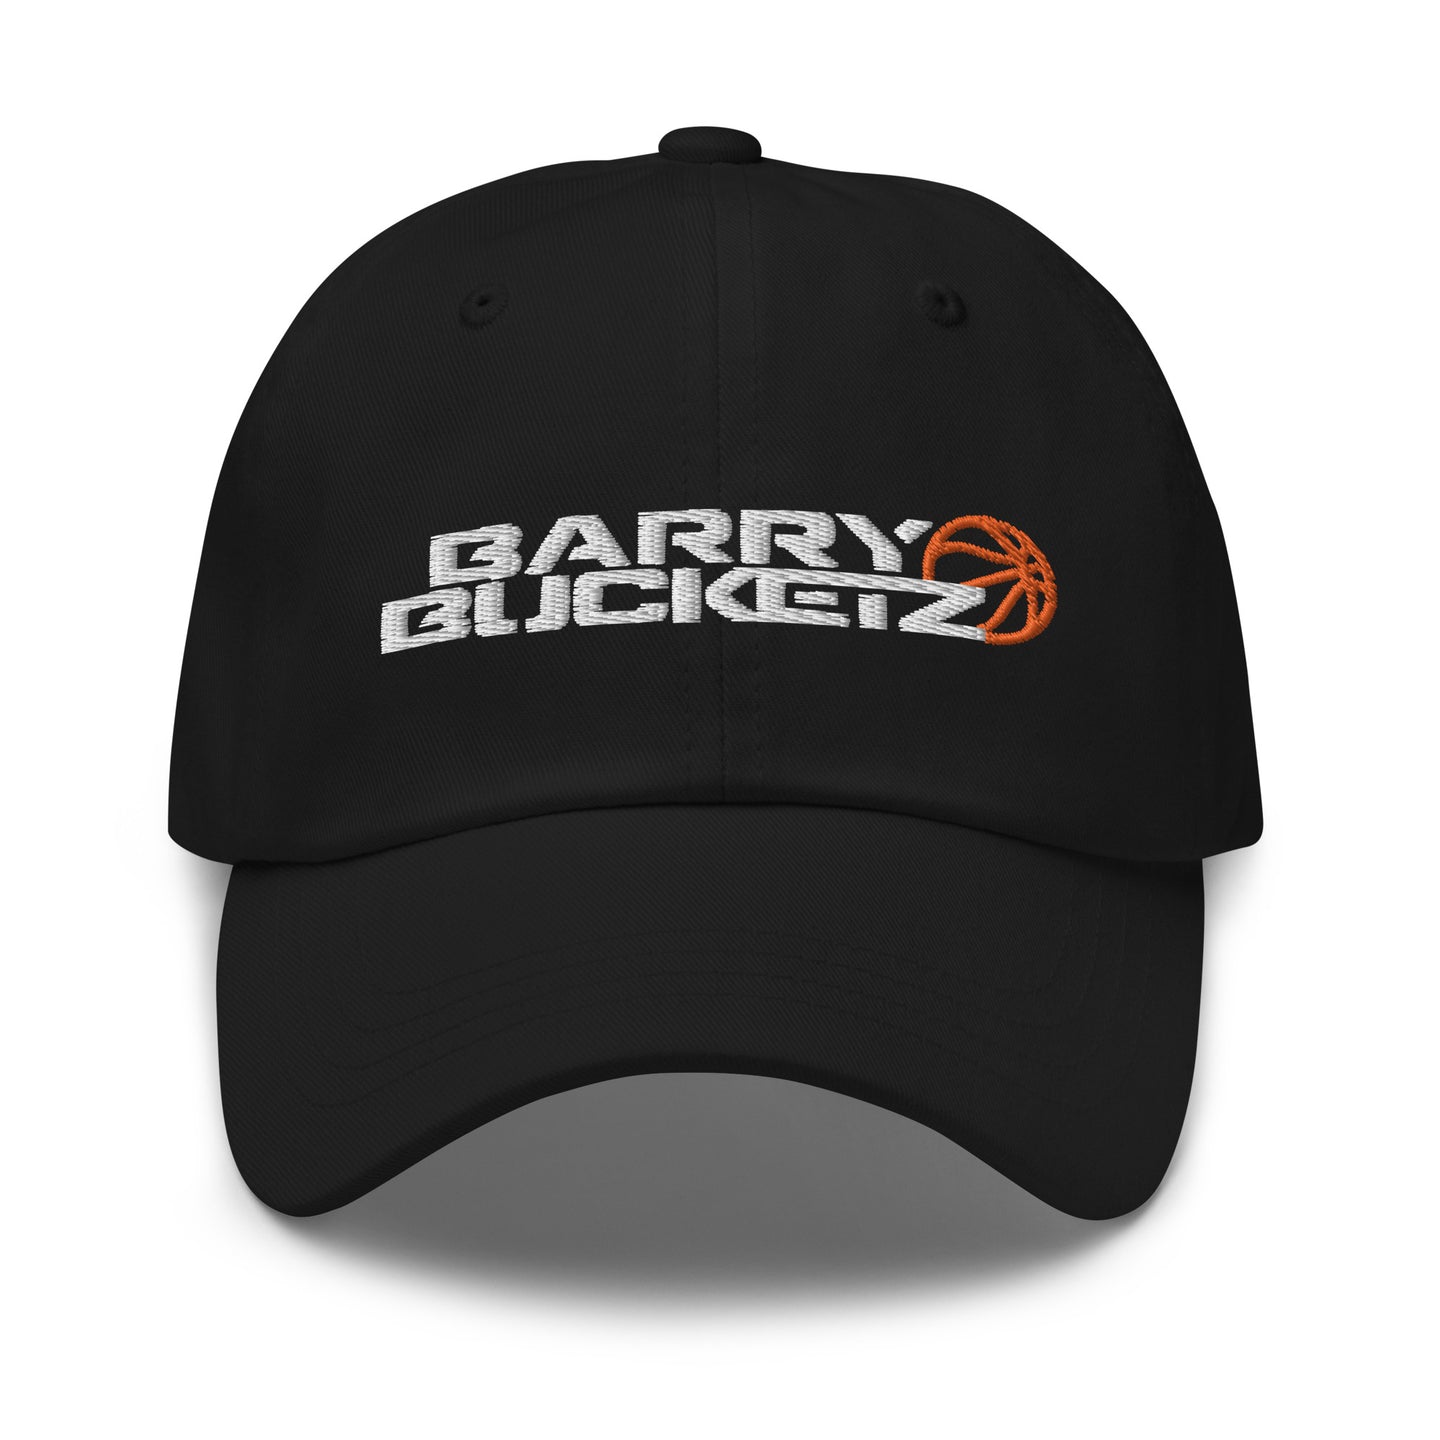 BARRY BUCKETZ DAD HAT